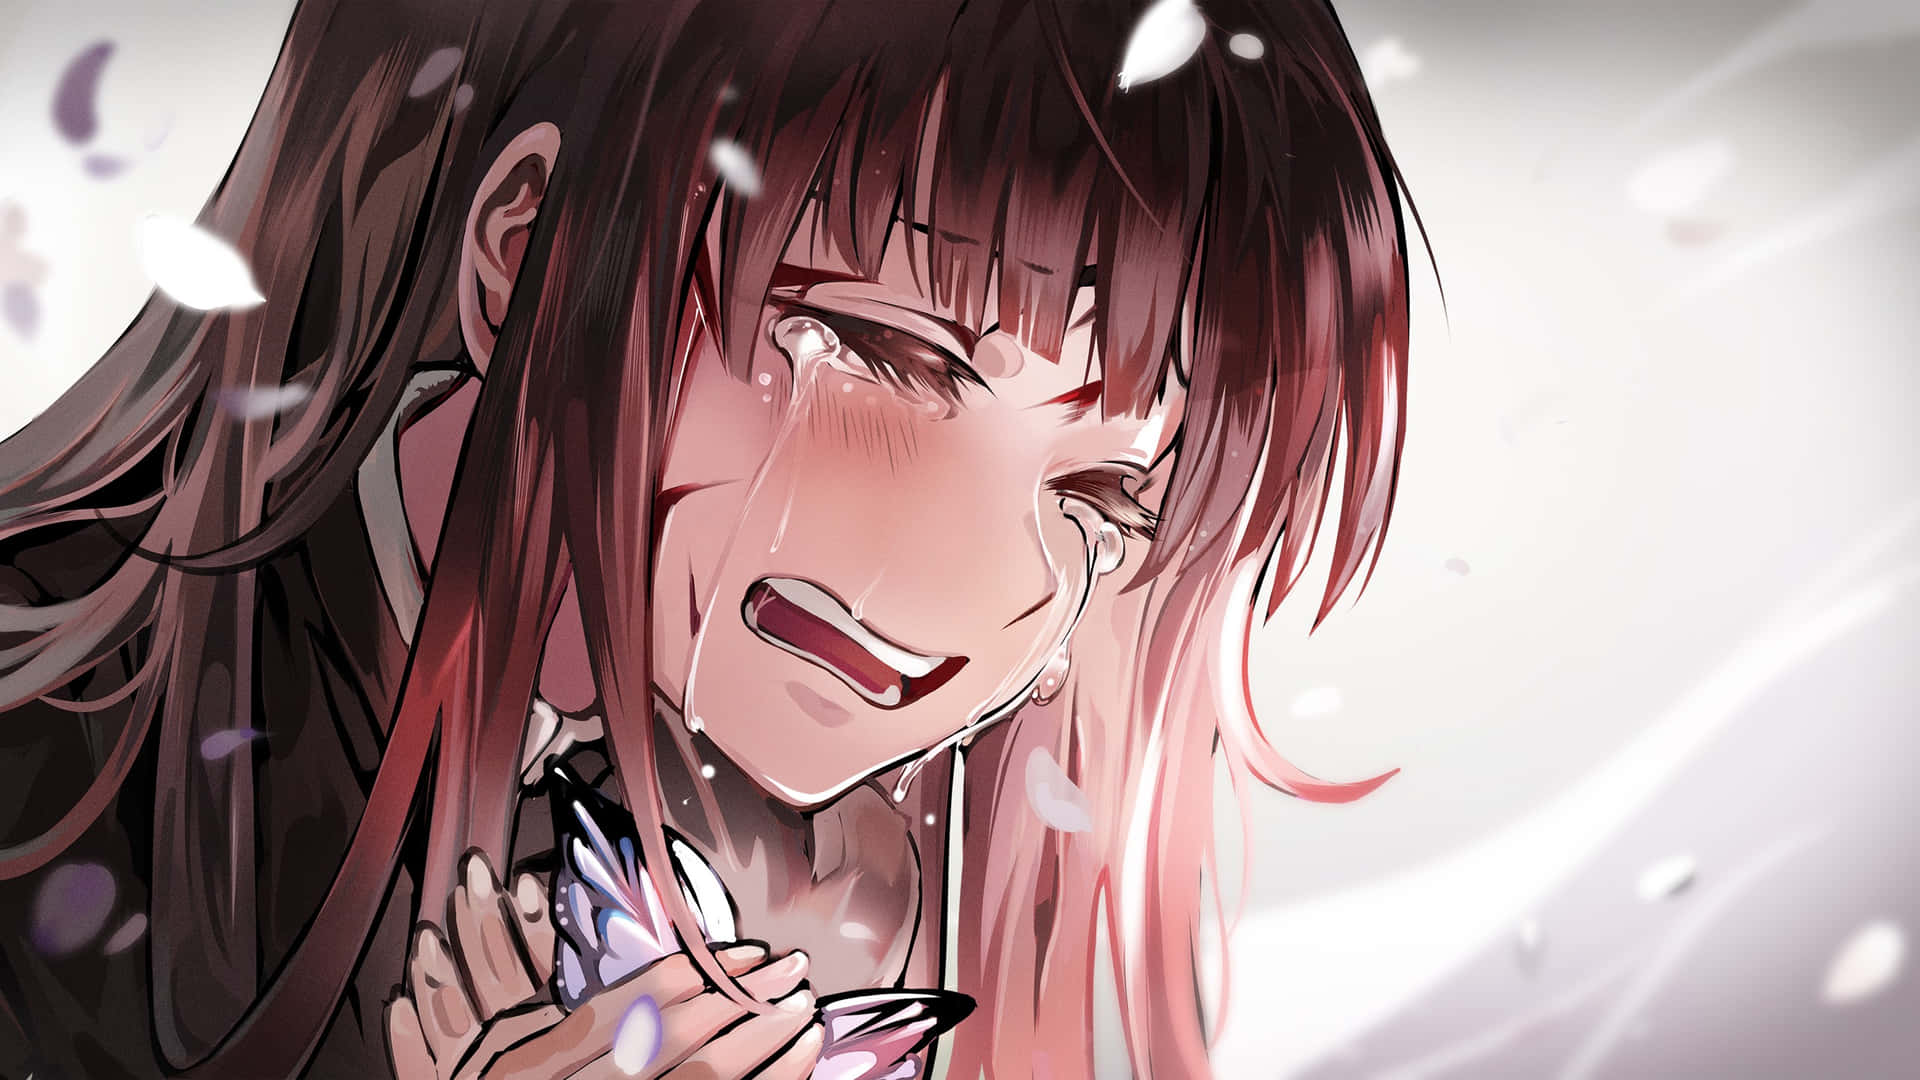 Heartbreak Anime Wallpaper